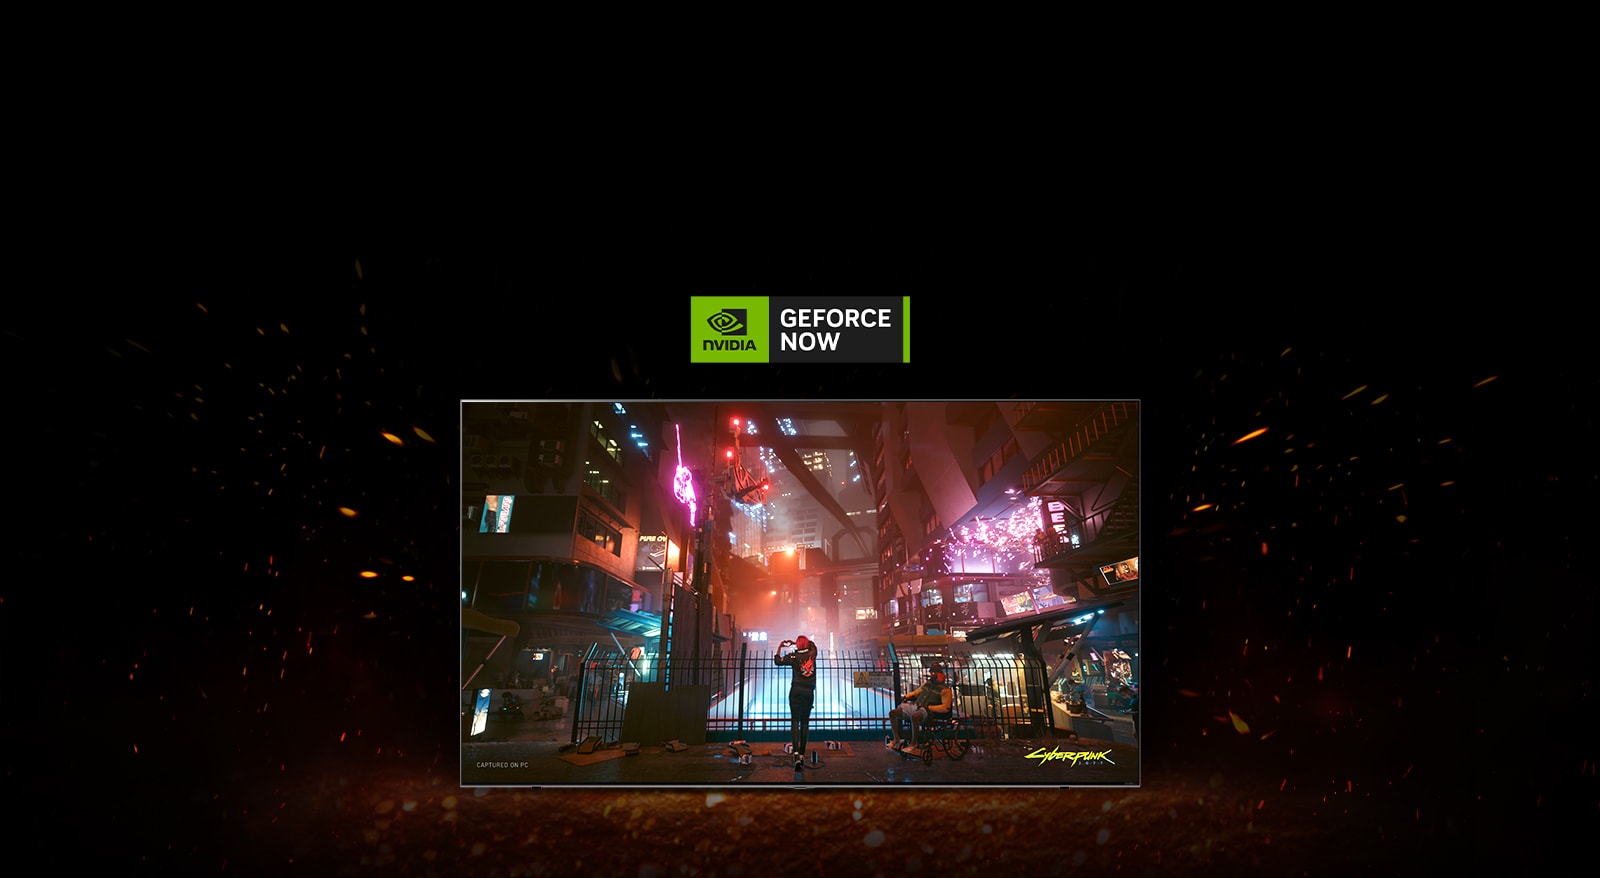 تضيء ومضات حول التلفزيون، ويمكنك رؤية لعبة Cyberpunk على الشاشة. يظهر شعار Geforce now أعلى التلفزيون.